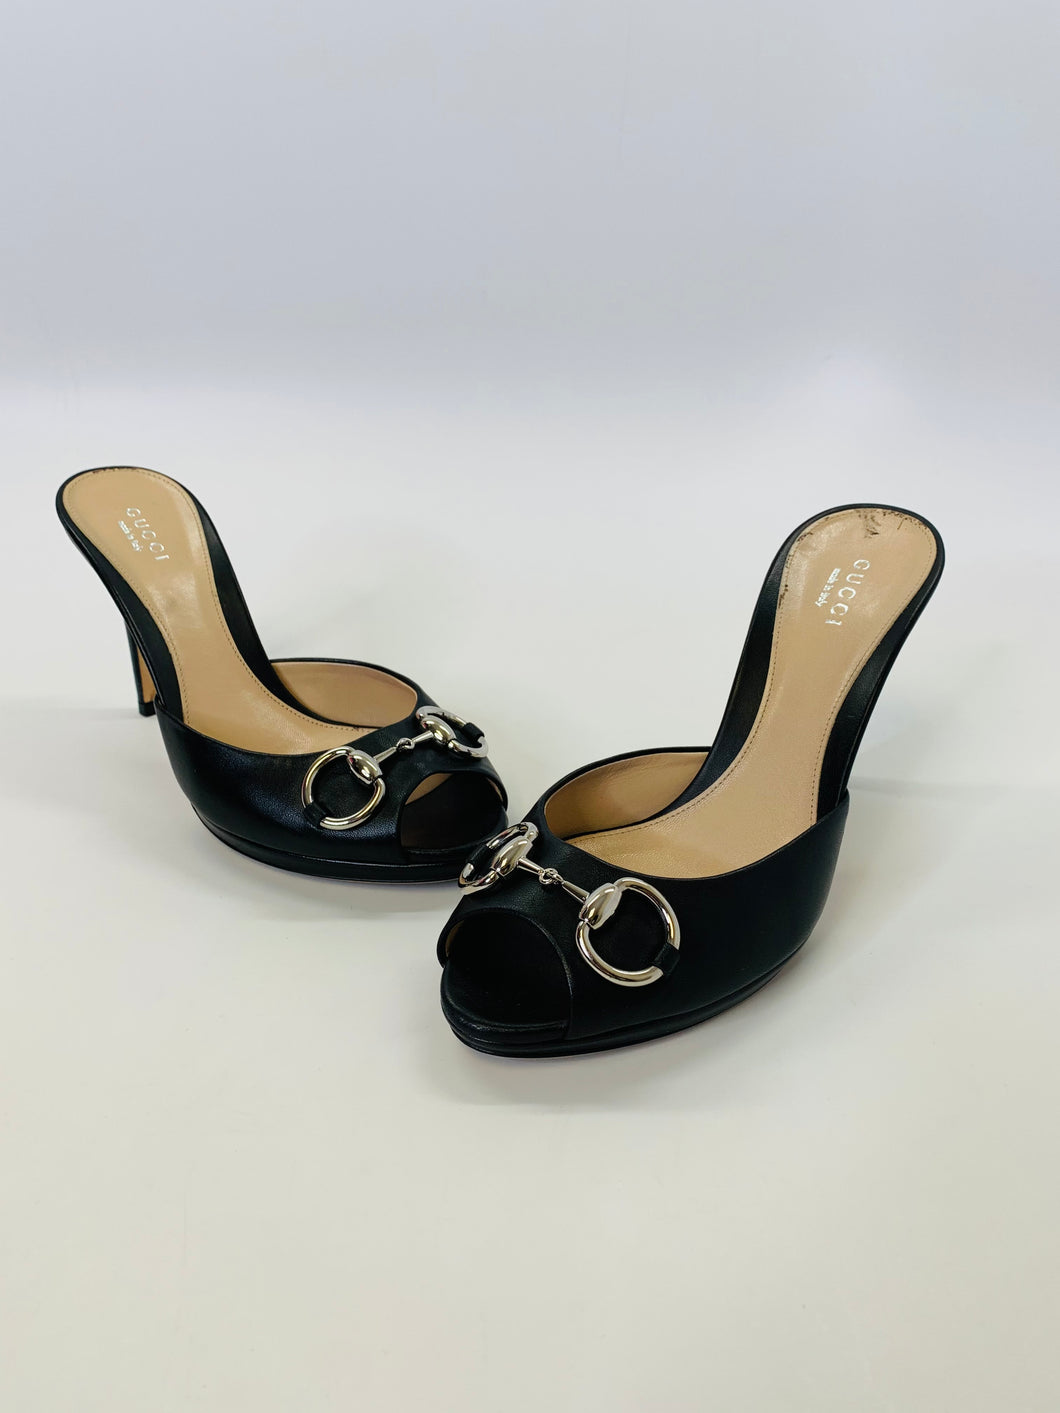 Gucci Black Horsebit Platform Sandals Size 37